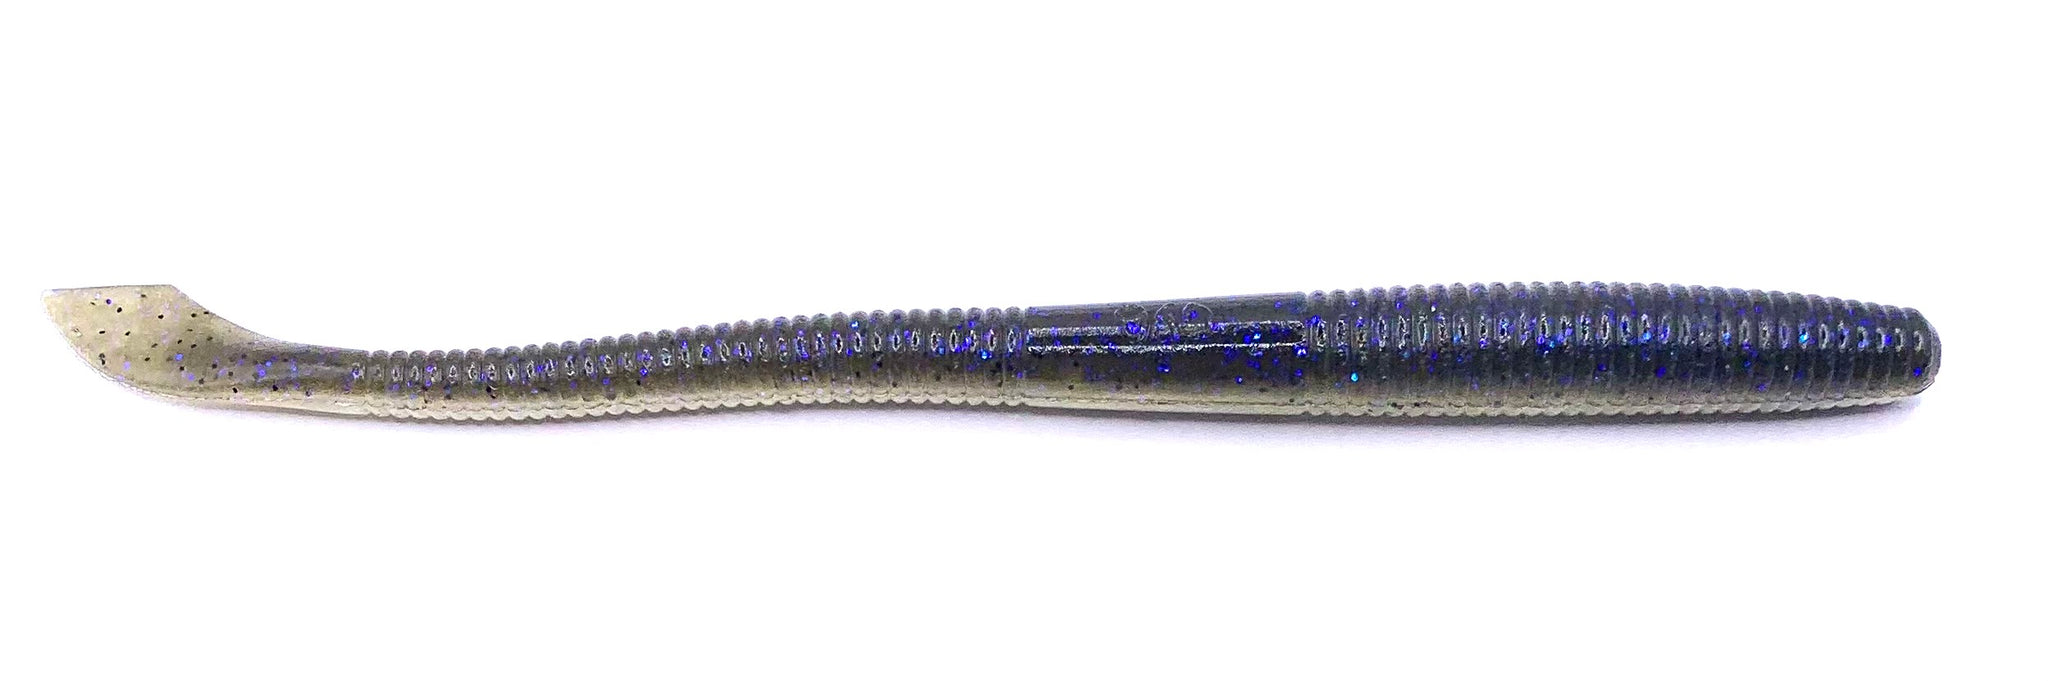 Yamamoto Kut Tail Worm 6.5”